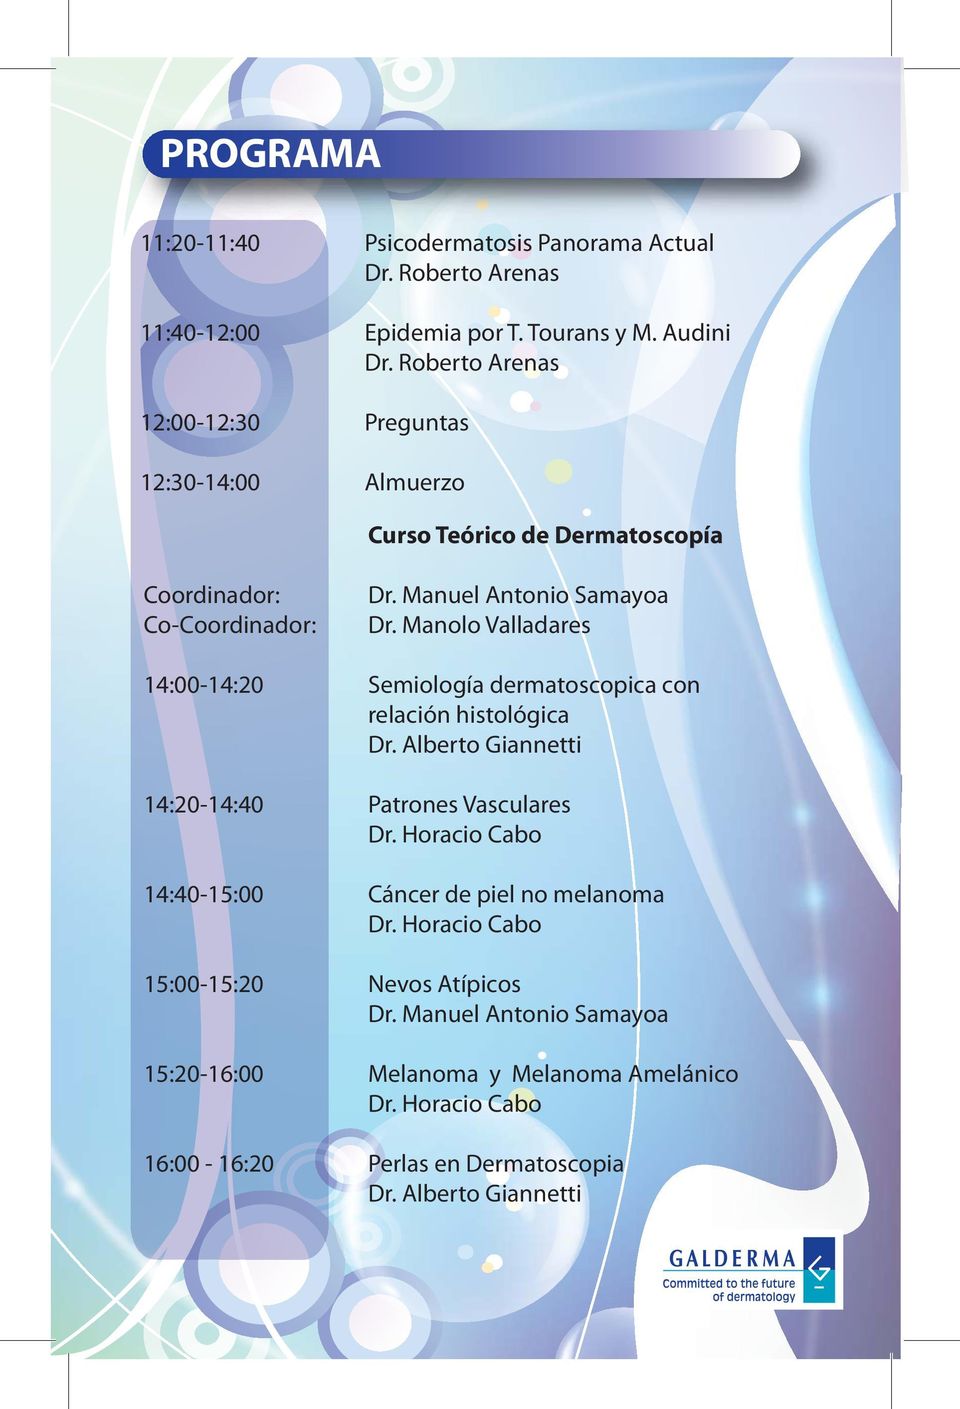 Manolo Valladares 14:00-14:20 Semiología dermatoscopica con relación histológica 14:20-14:40 Patrones Vasculares Dr.